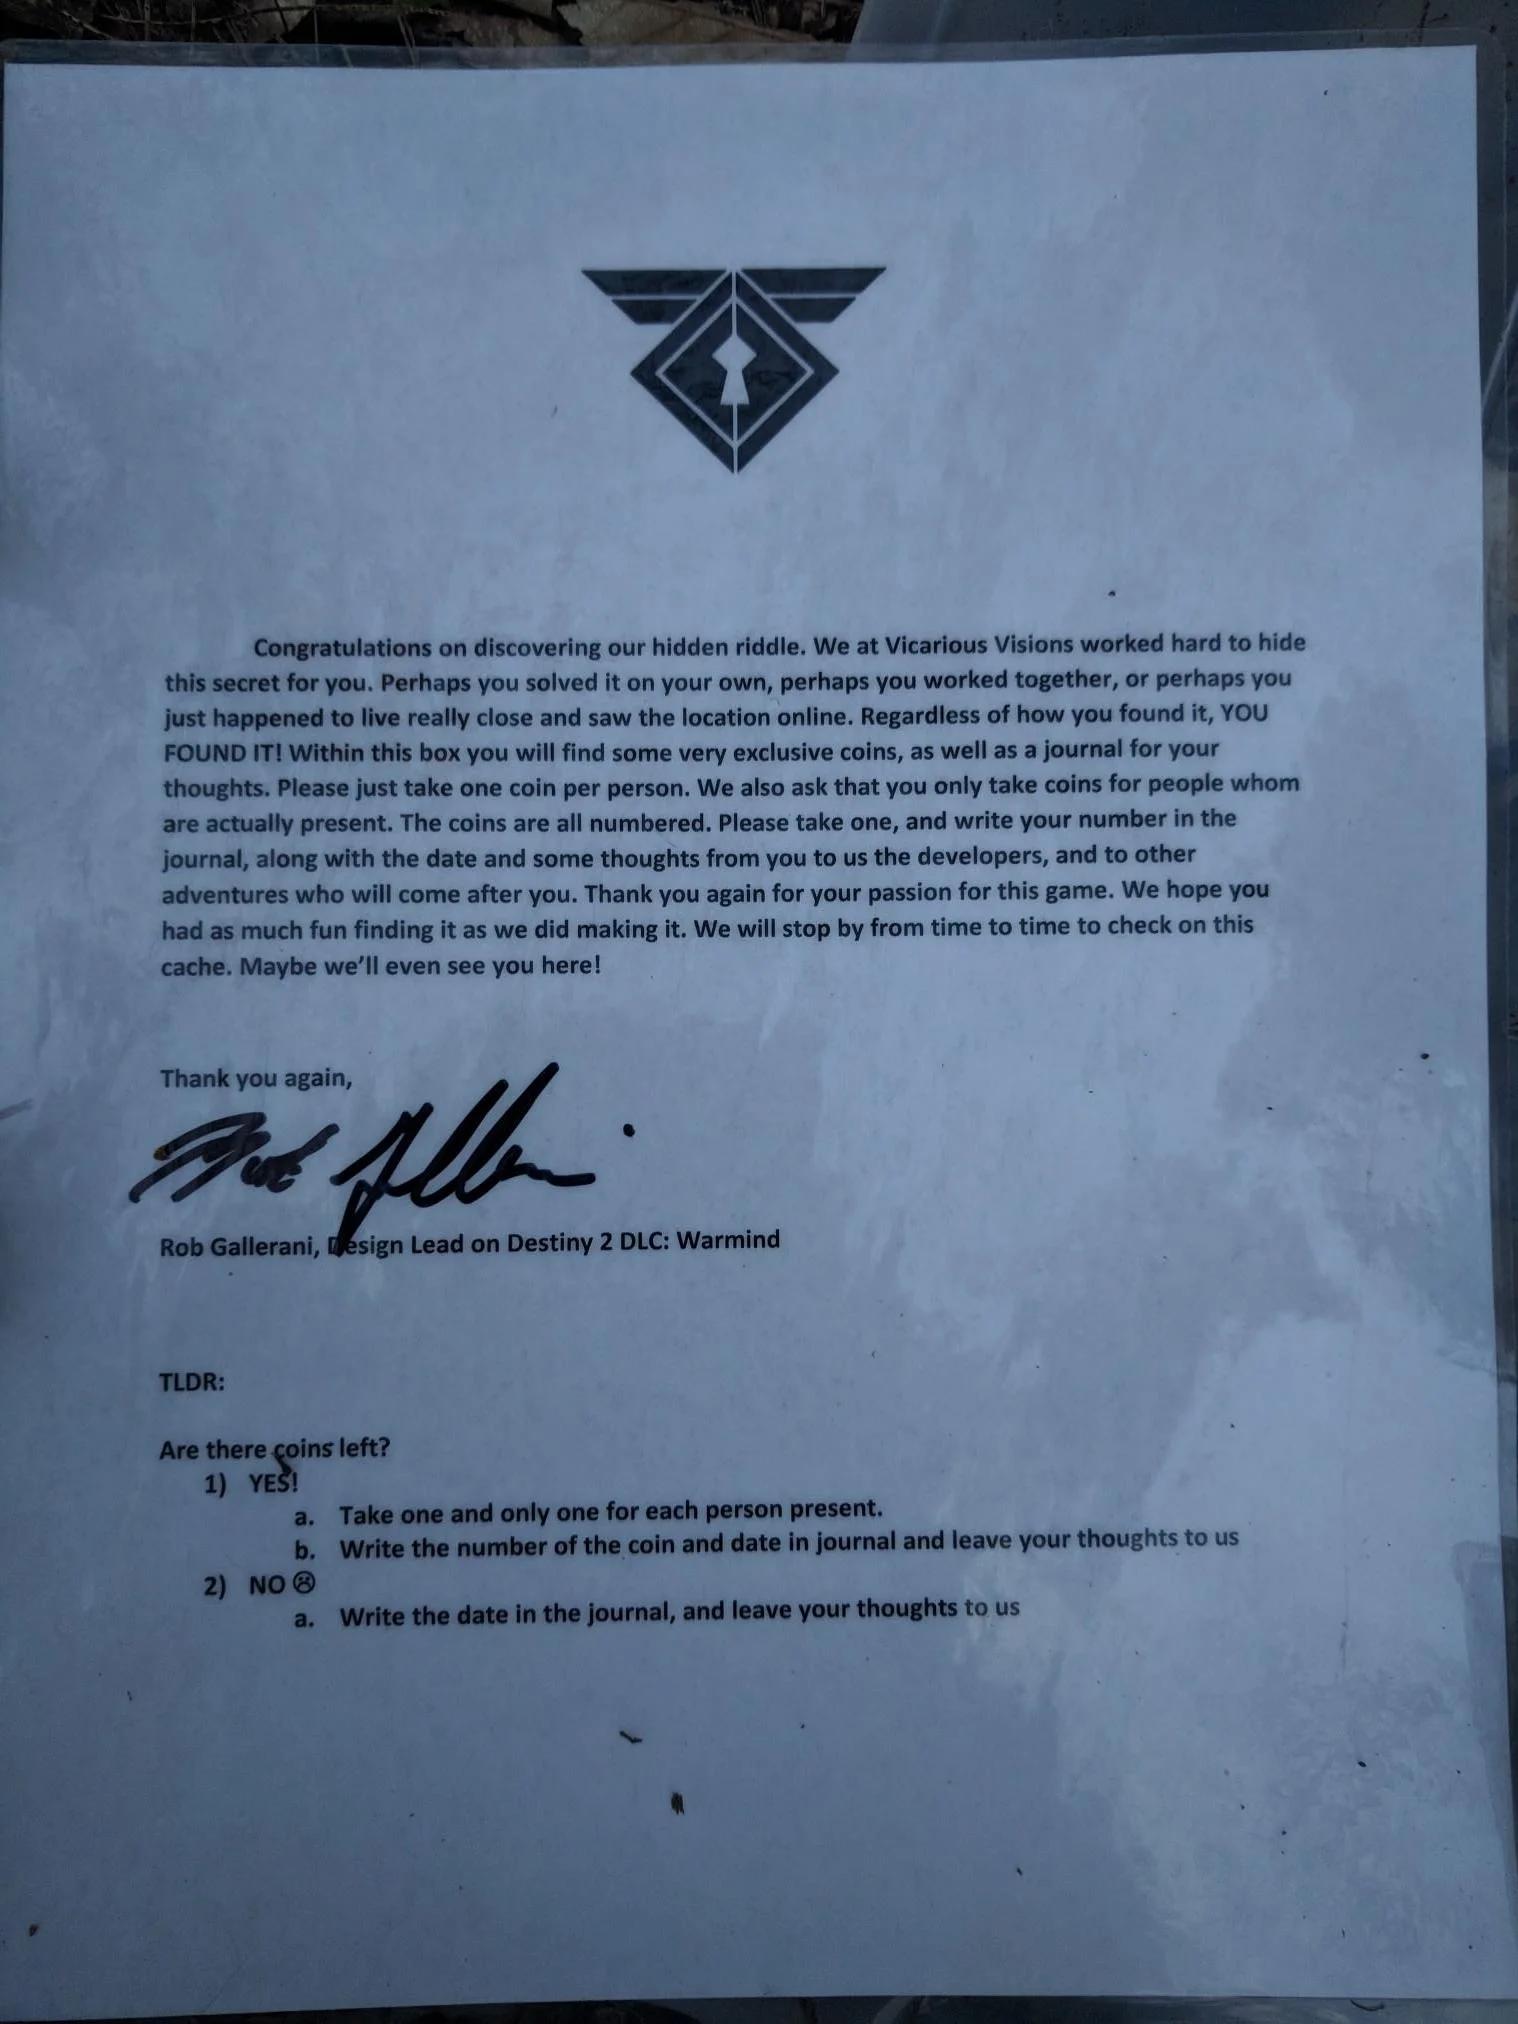 Фанаты Destiny 2 нашли около Нью-Йорка клад, оставленный разработчиками DLC Warmind - фото 3